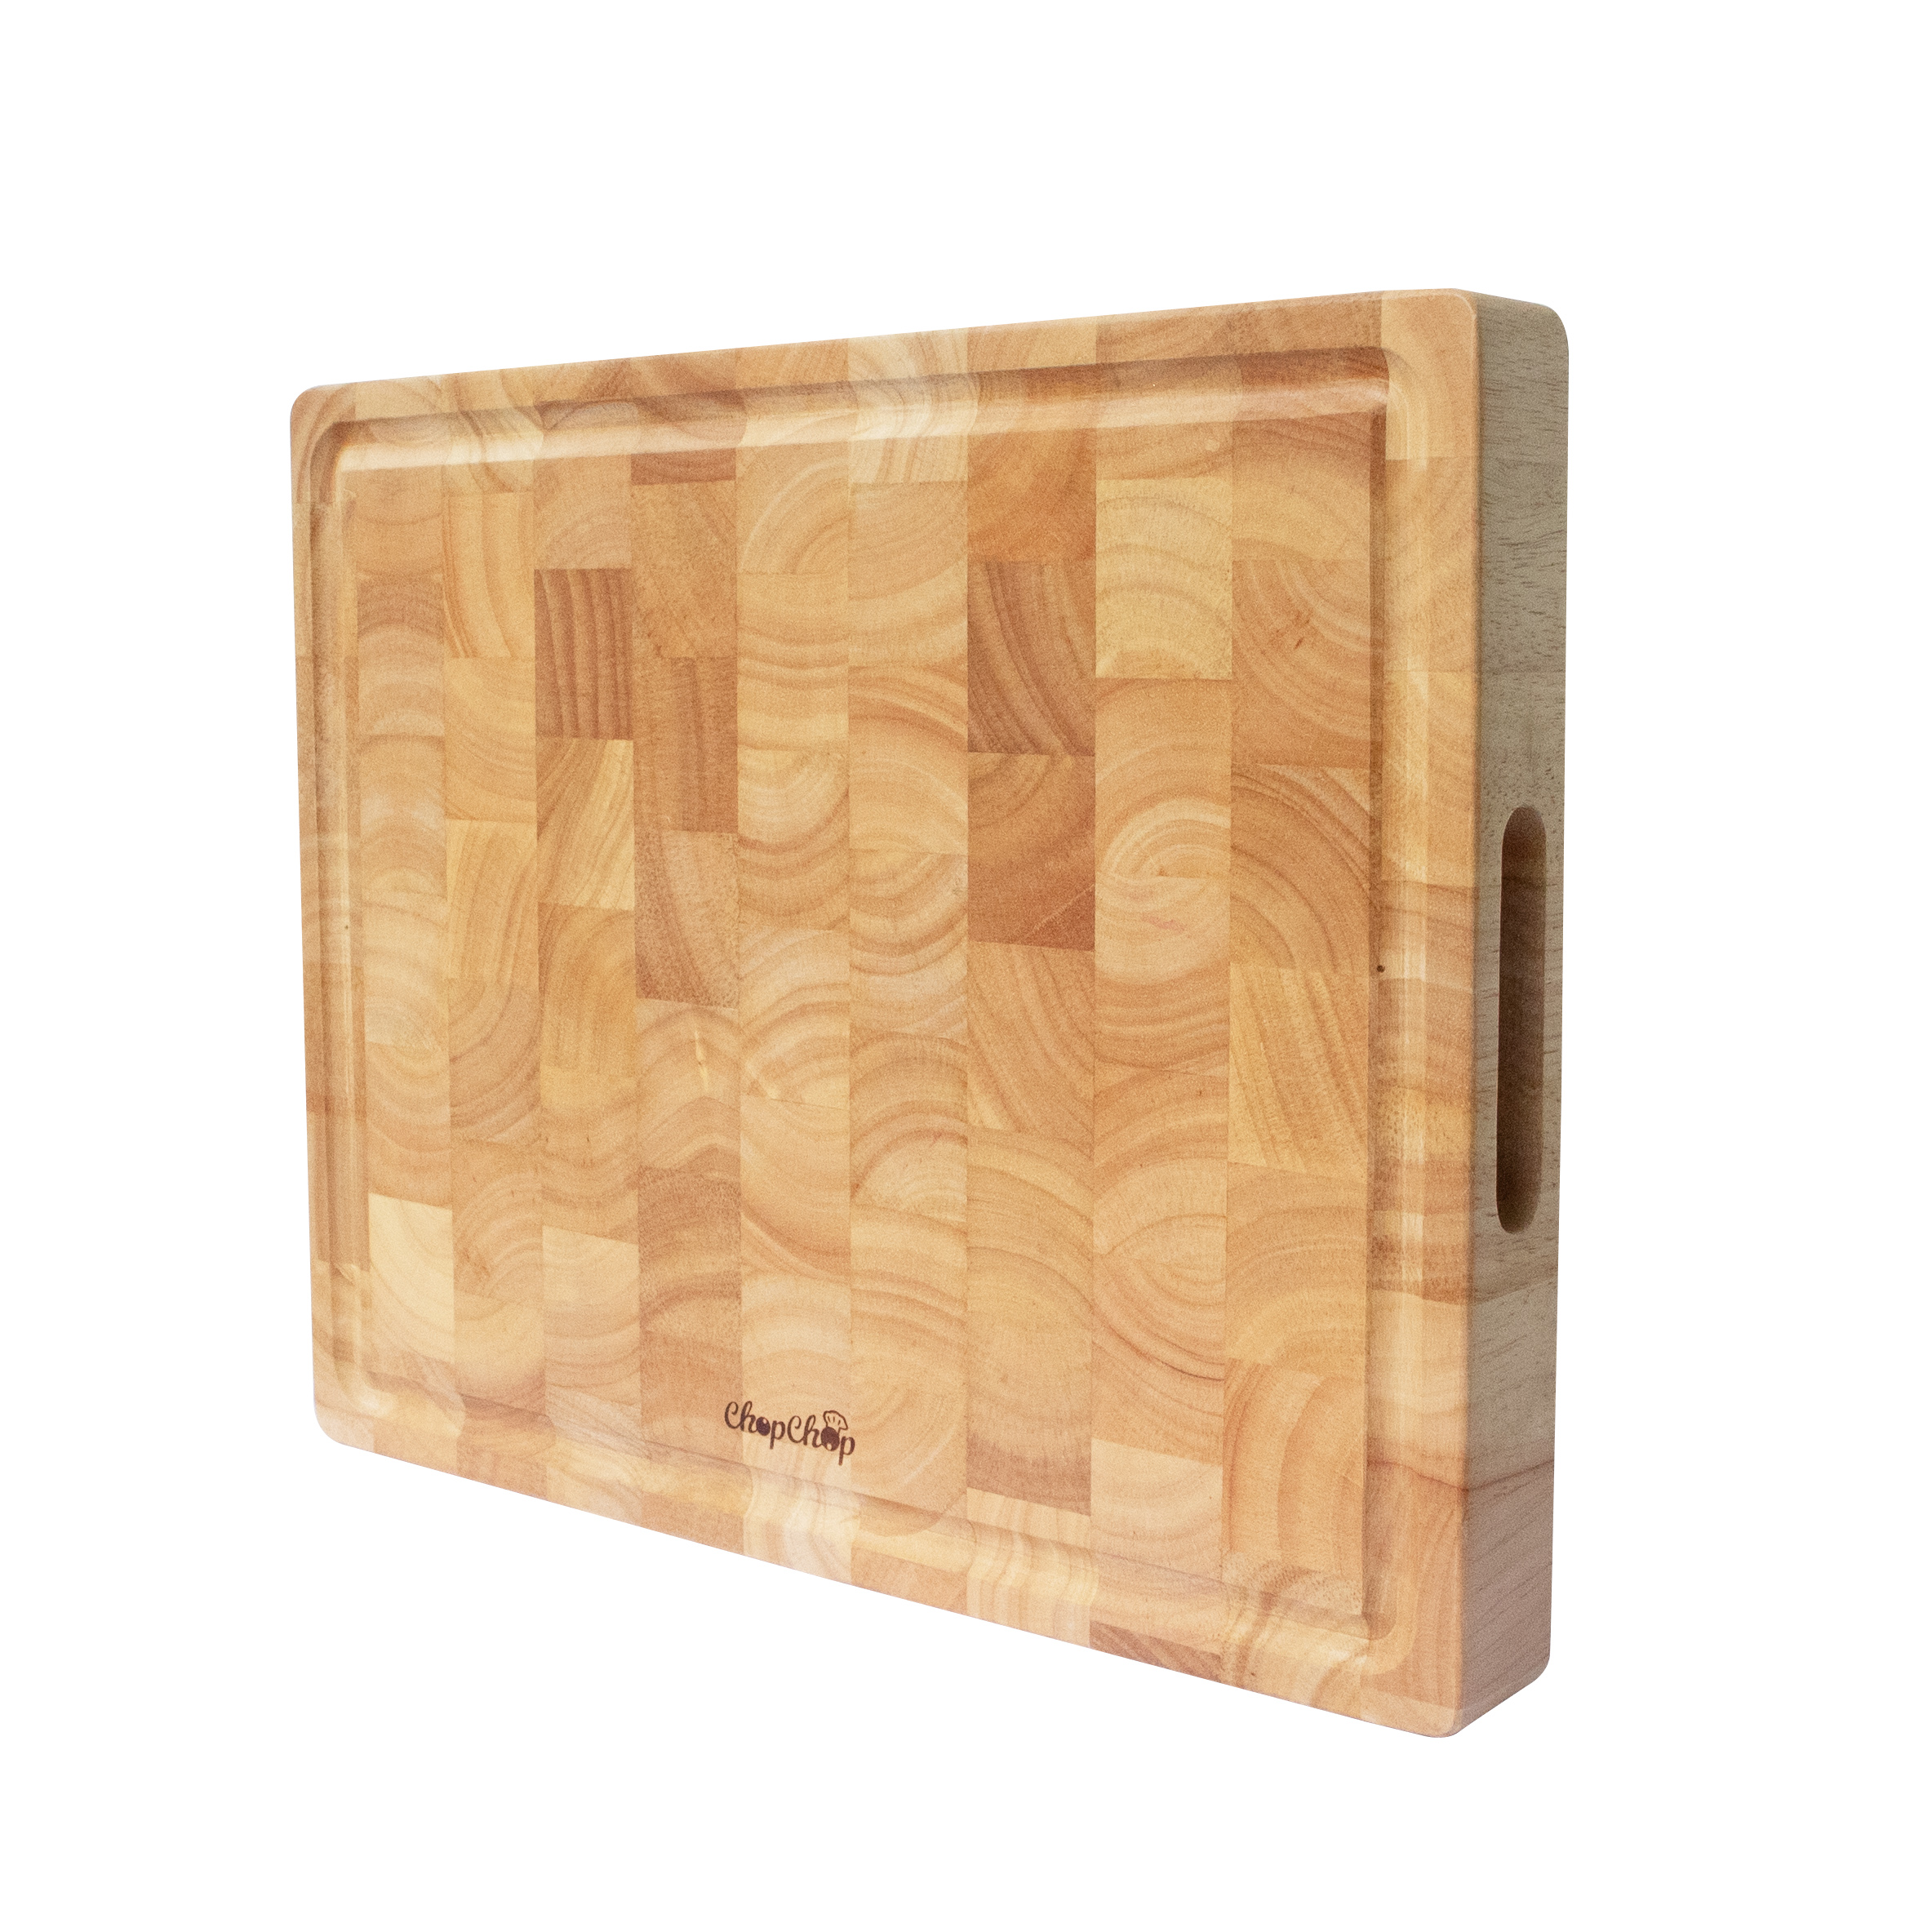 Thớt gỗ cao su hình chữ nhật, sớ lật phong cách Châu Âu | Chopchop 06051 | Đạt tiêu chuẩn xuất khẩu